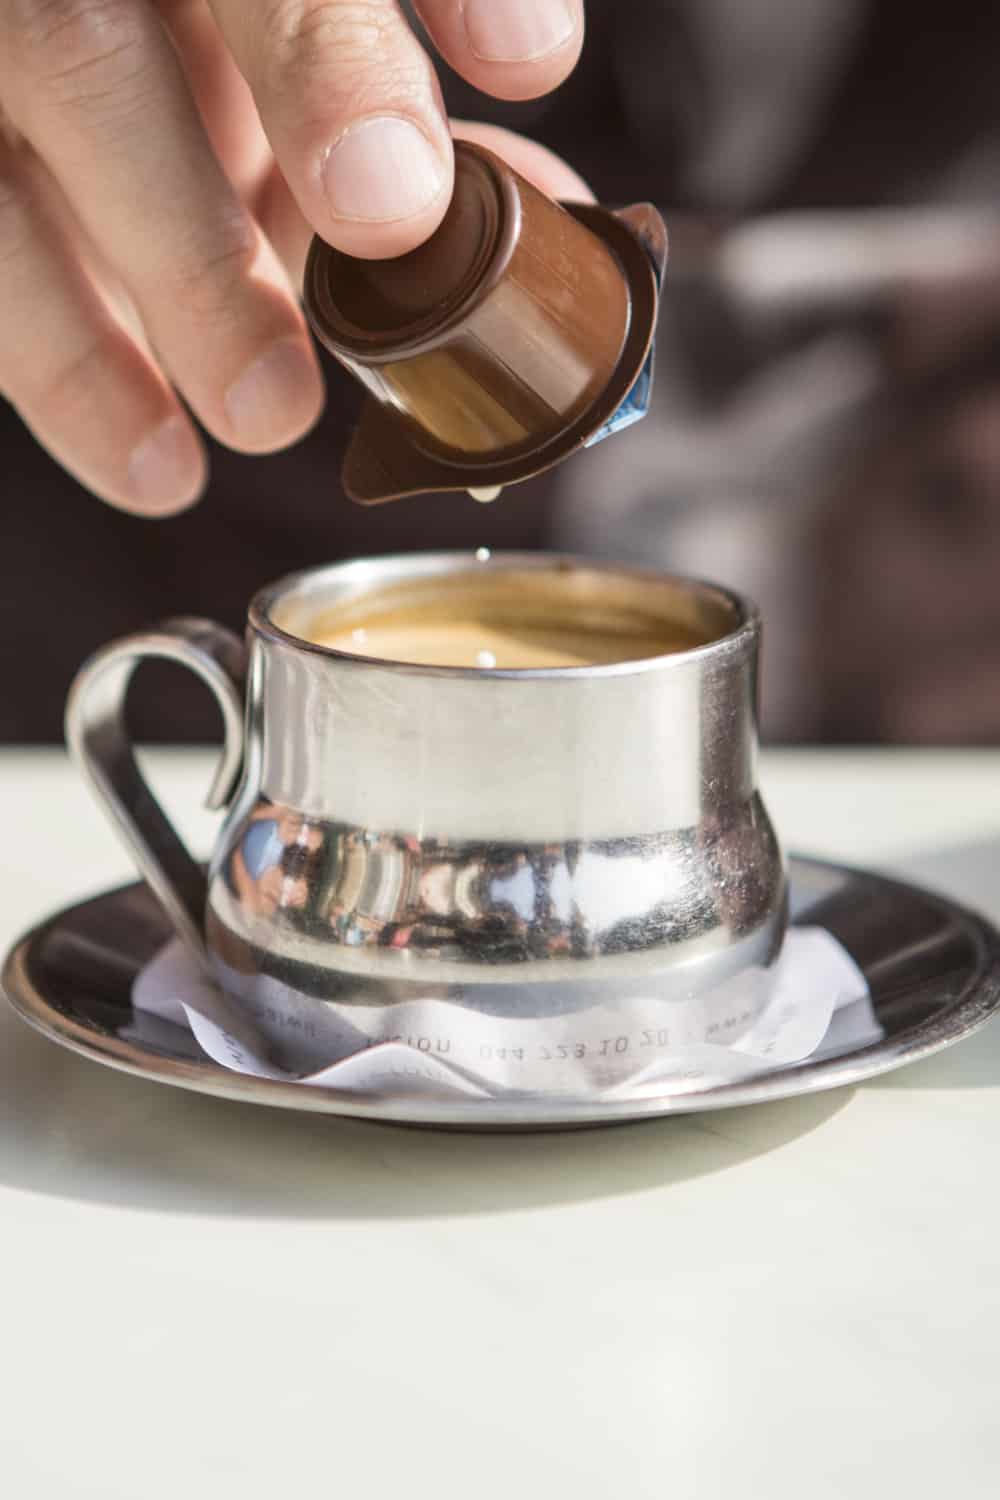 Top 5 Best Coffee Creamer of 2022 - Egészséges és cukormentes a fogyáshoz